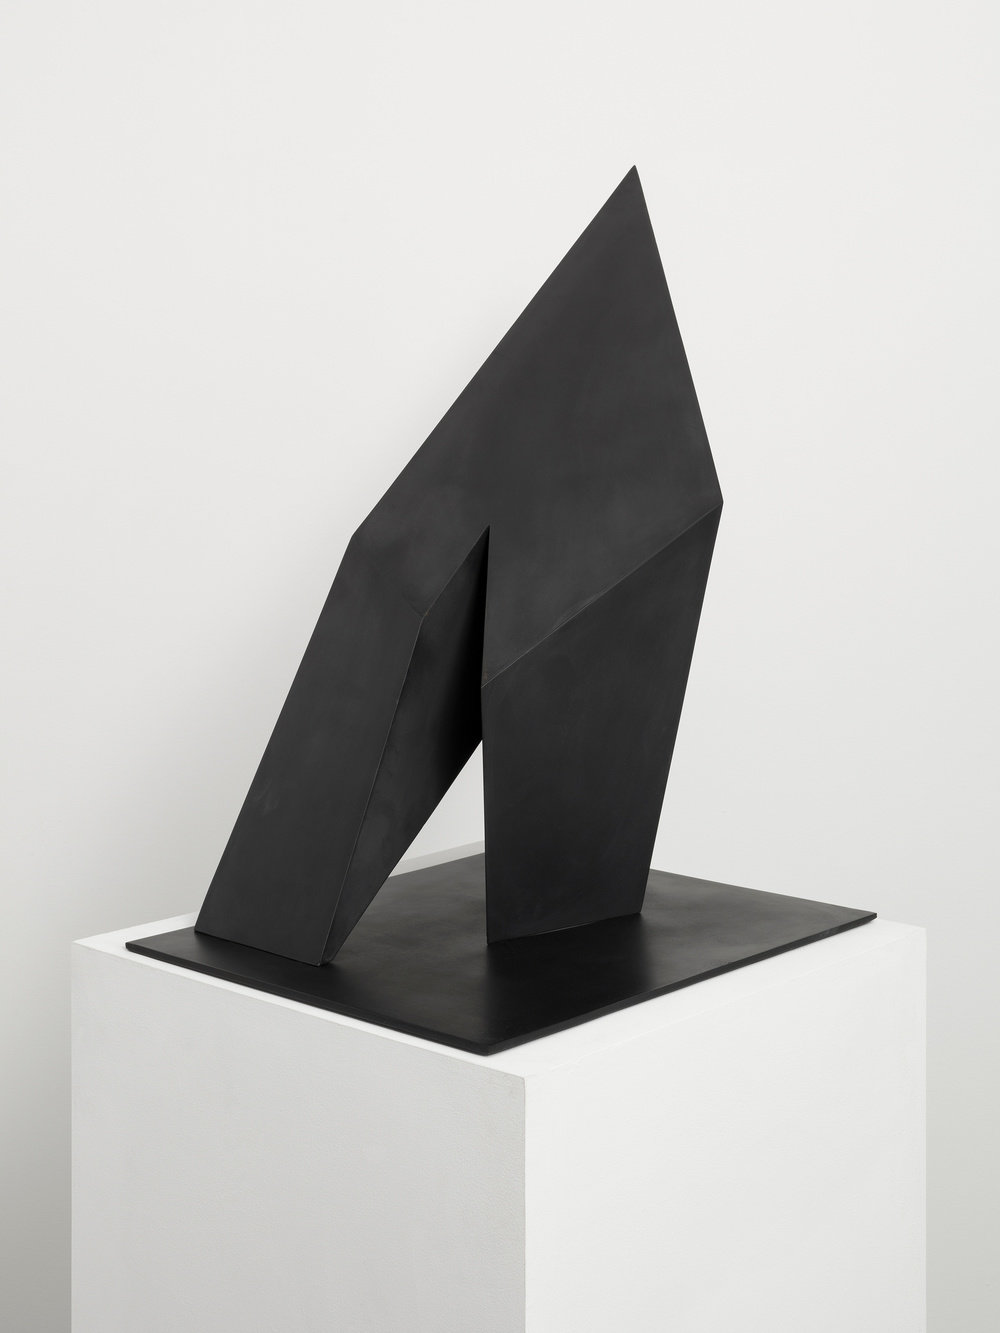 Pepper, black triangle, 1970 steel, paint, unique, 27 x 33 x 16 in. : 68.6 x 83.8 x 40.6 cm, cnon 61.881 pierre le hors